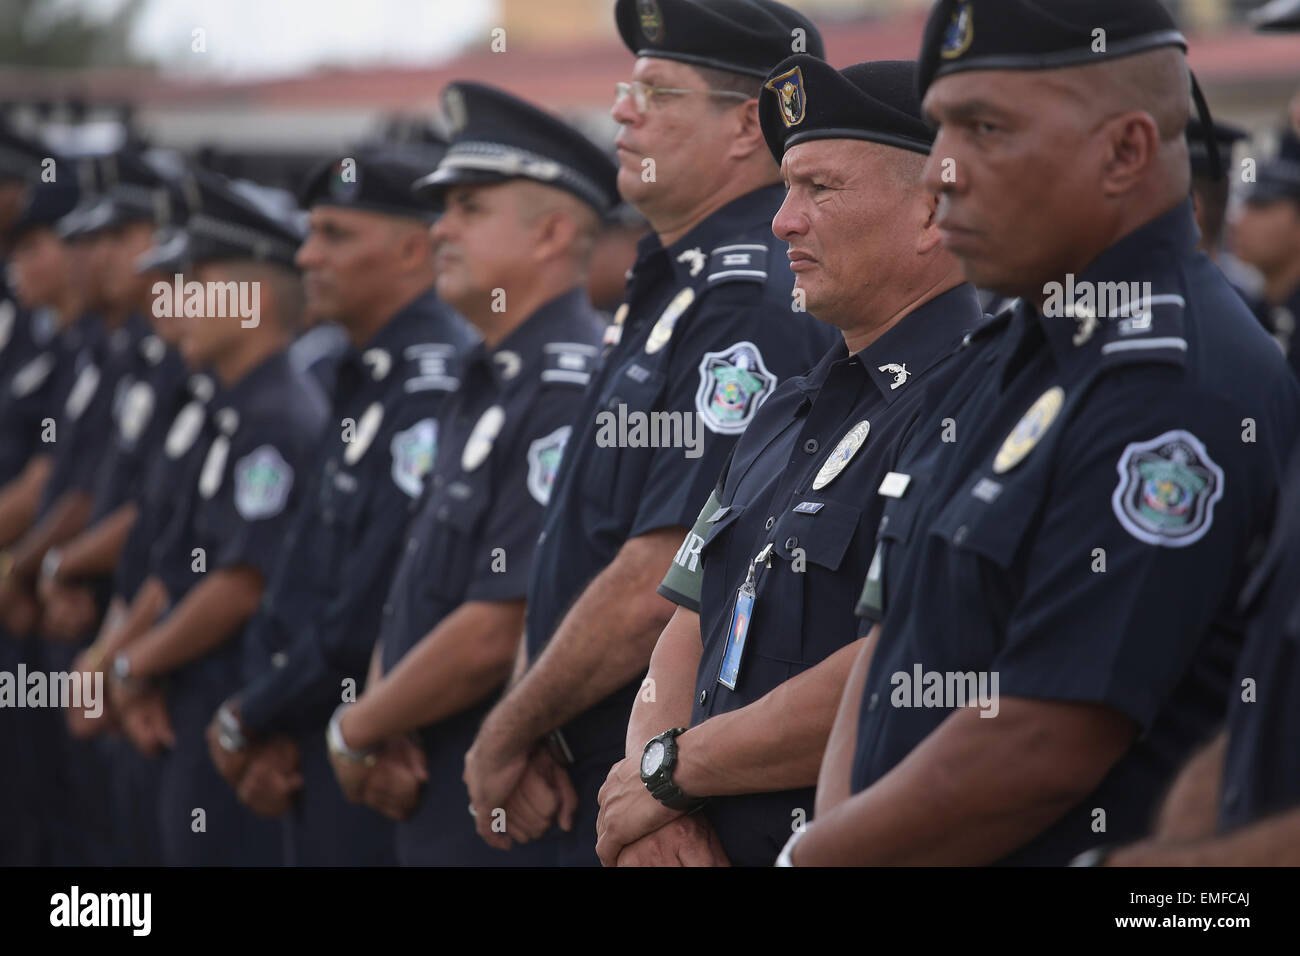 Ciudad de Panamá, Panamá. 20 abr, 2015. Miembros de la Policía Nacional  toman parte en una ceremonia de condecorations, en la Ciudad de Panamá,  capital de Panamá, el 20 de abril de